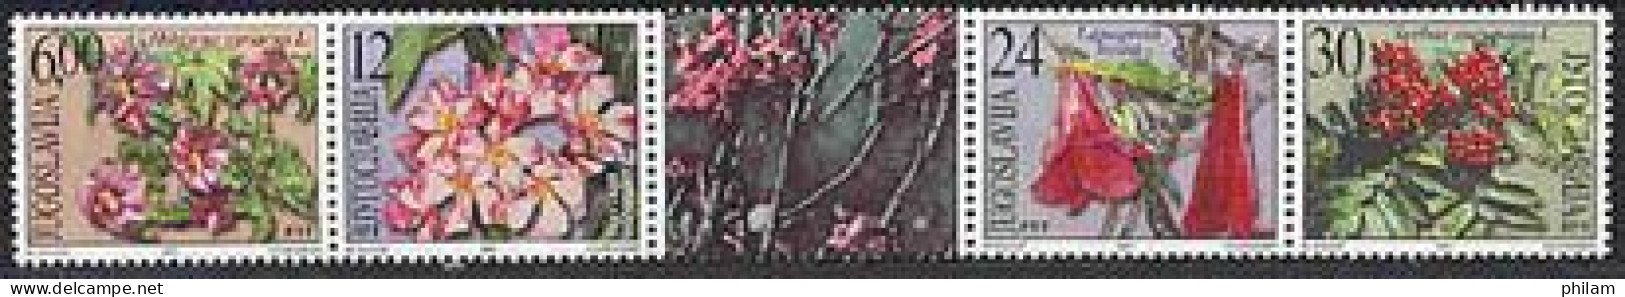 YOUGOSLAVIE 2001 - Fleurs Et Arbustes Décoratifs - 4 V. - Unused Stamps